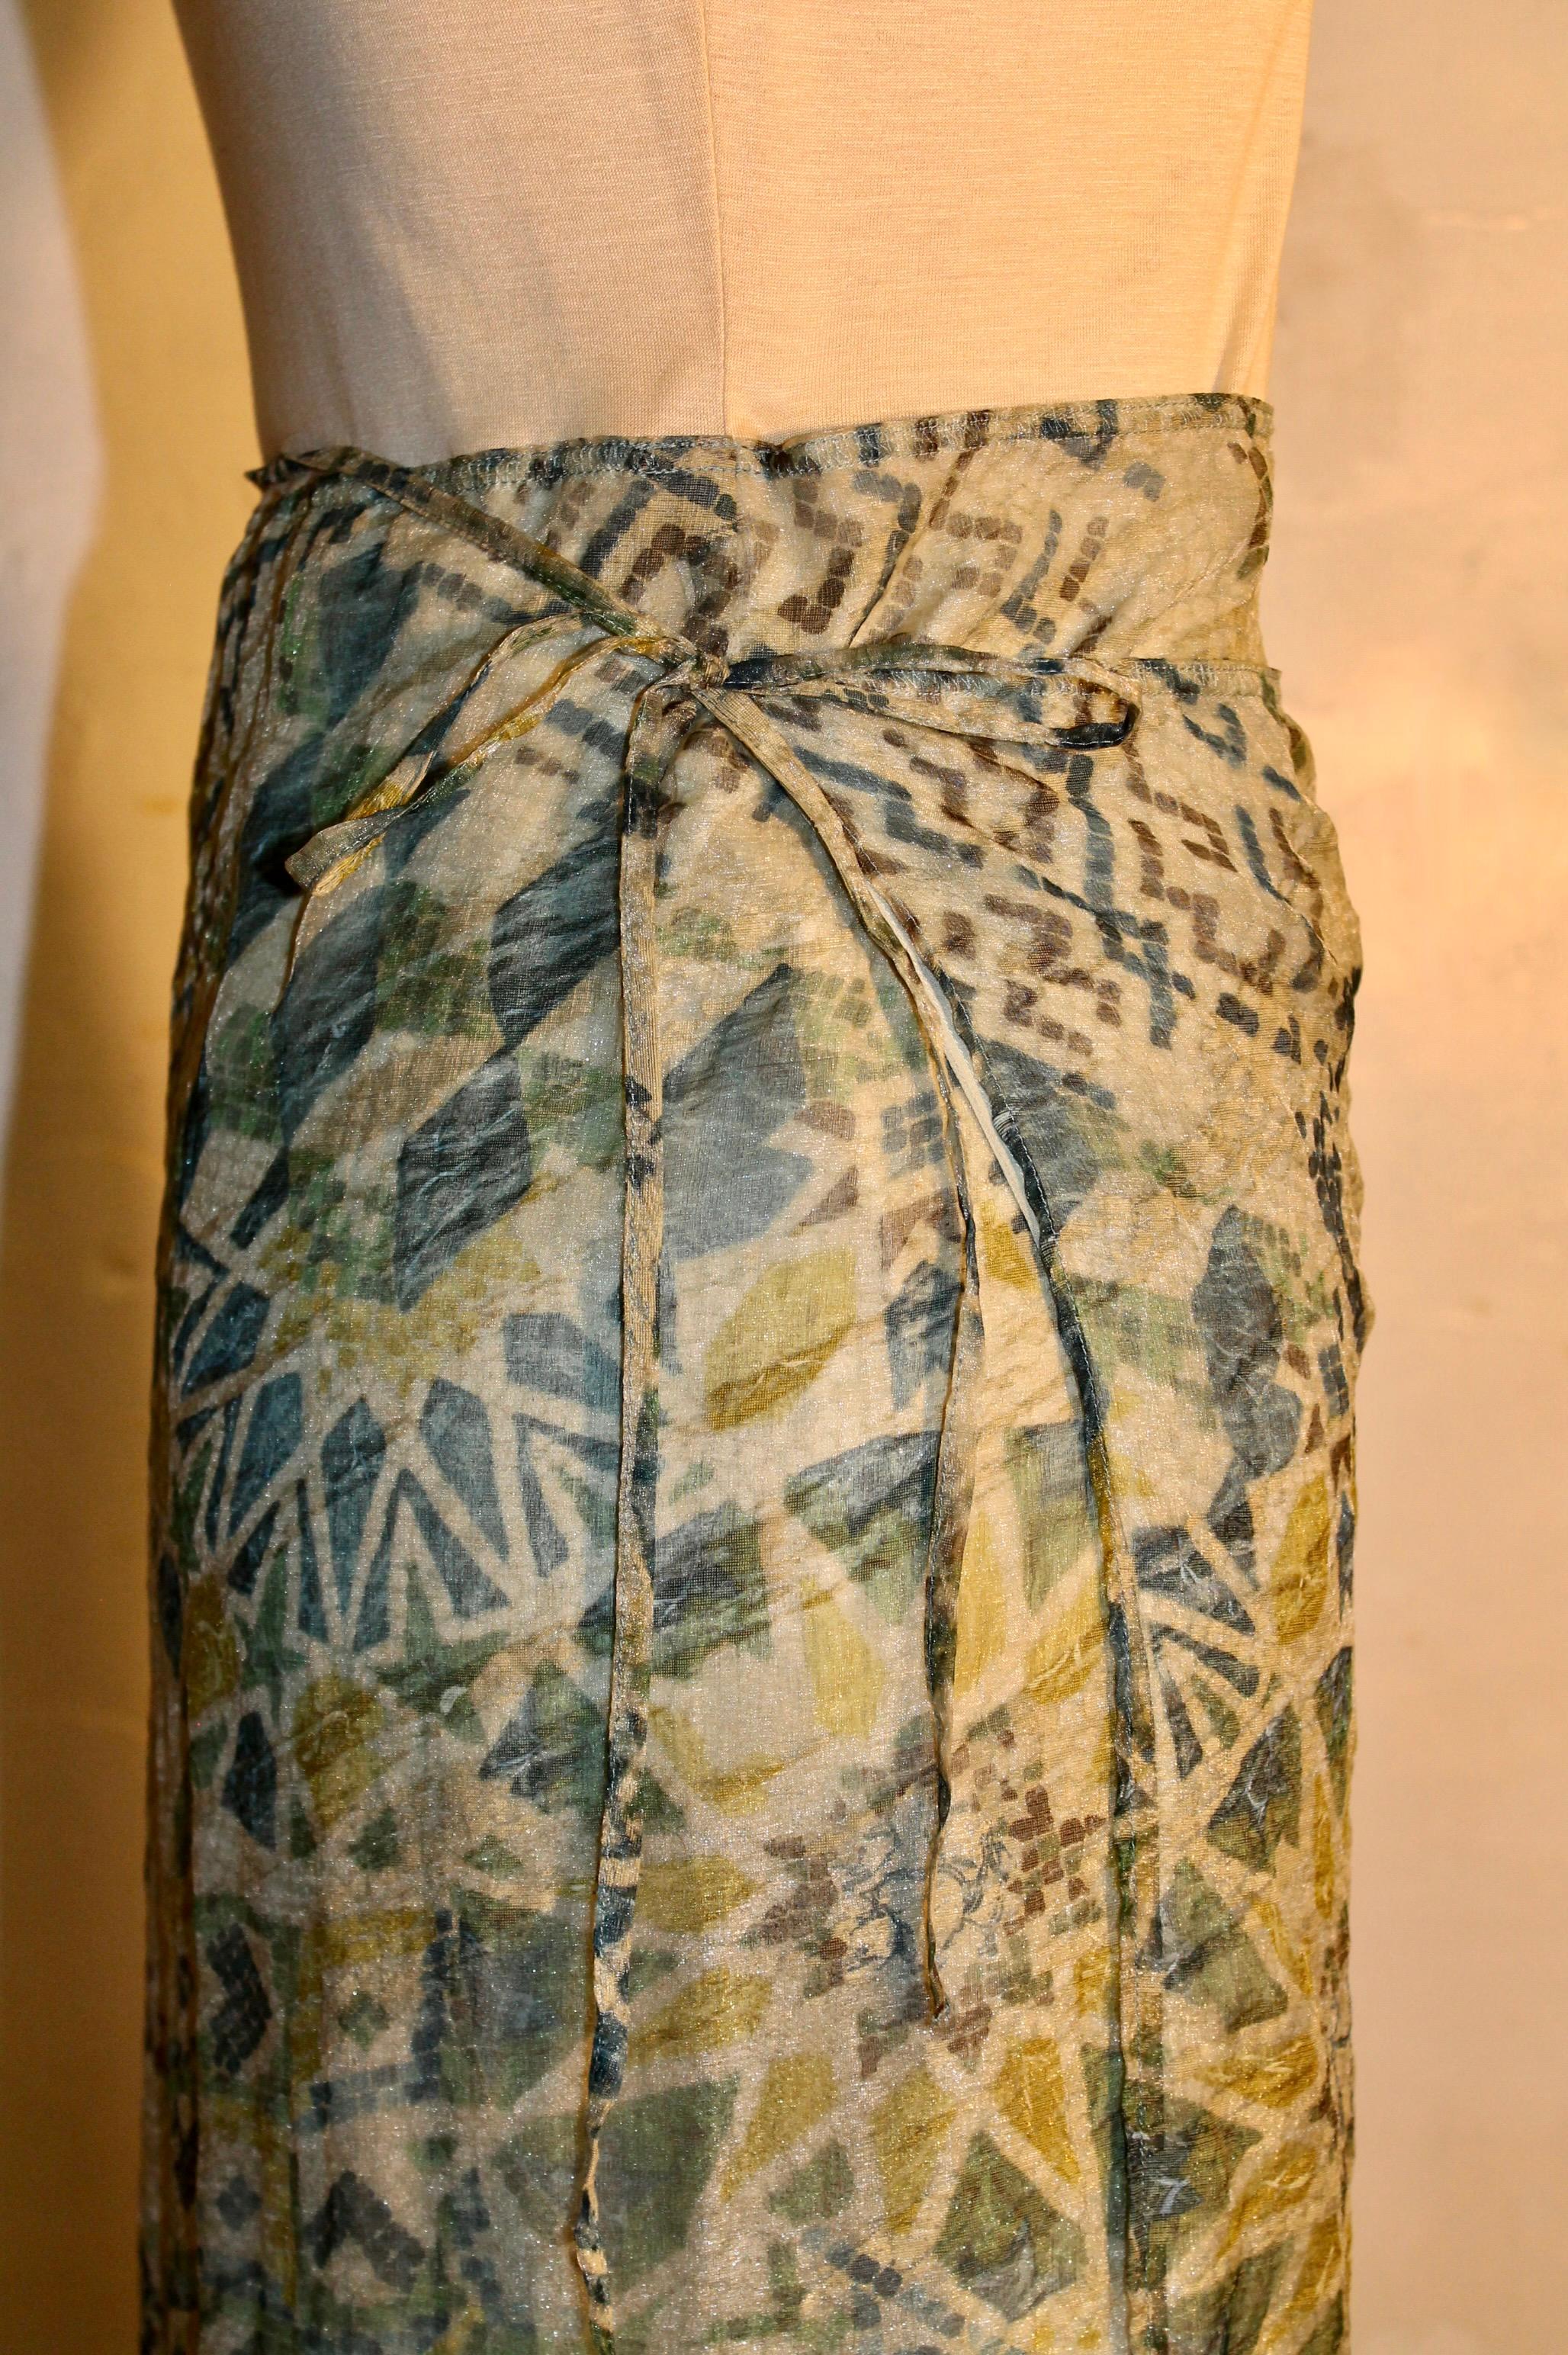 Kenzo Takada - Robe à jupe enveloppante Pour femmes en vente